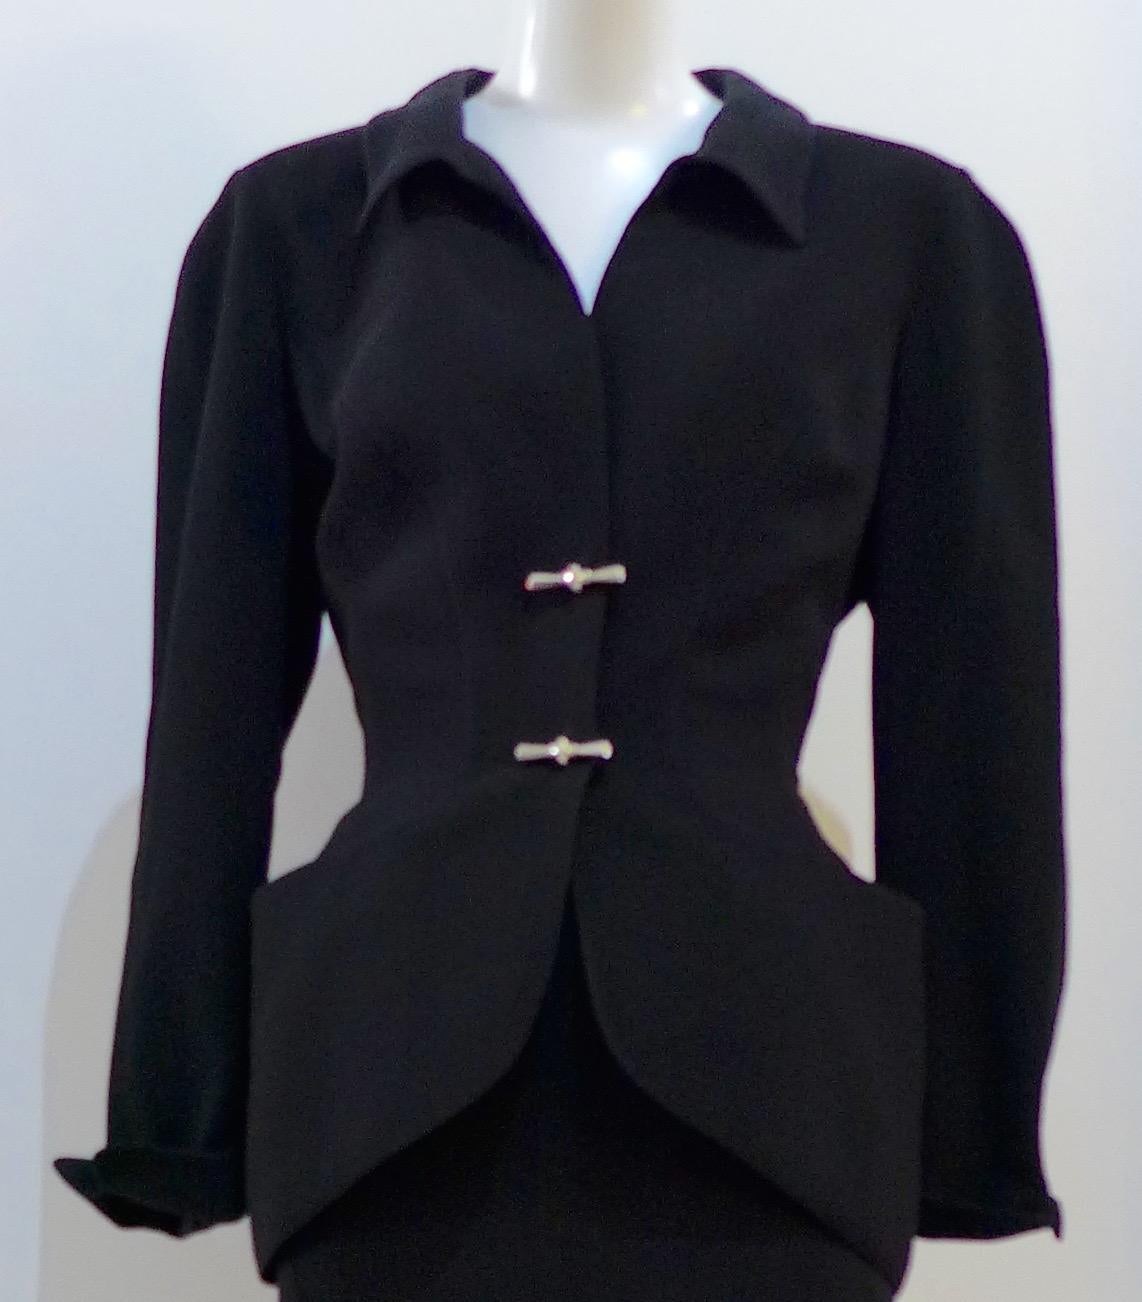 Ce tailleur jupe THIERRY MUGLER est composé d'un tissu polyester noir. La silhouette classique de Mugler, avec une taille pincée et une ligne de buste incurvée jusqu'à l'encolure. La veste est dotée de fermetures à pression sur le devant, d'épaules